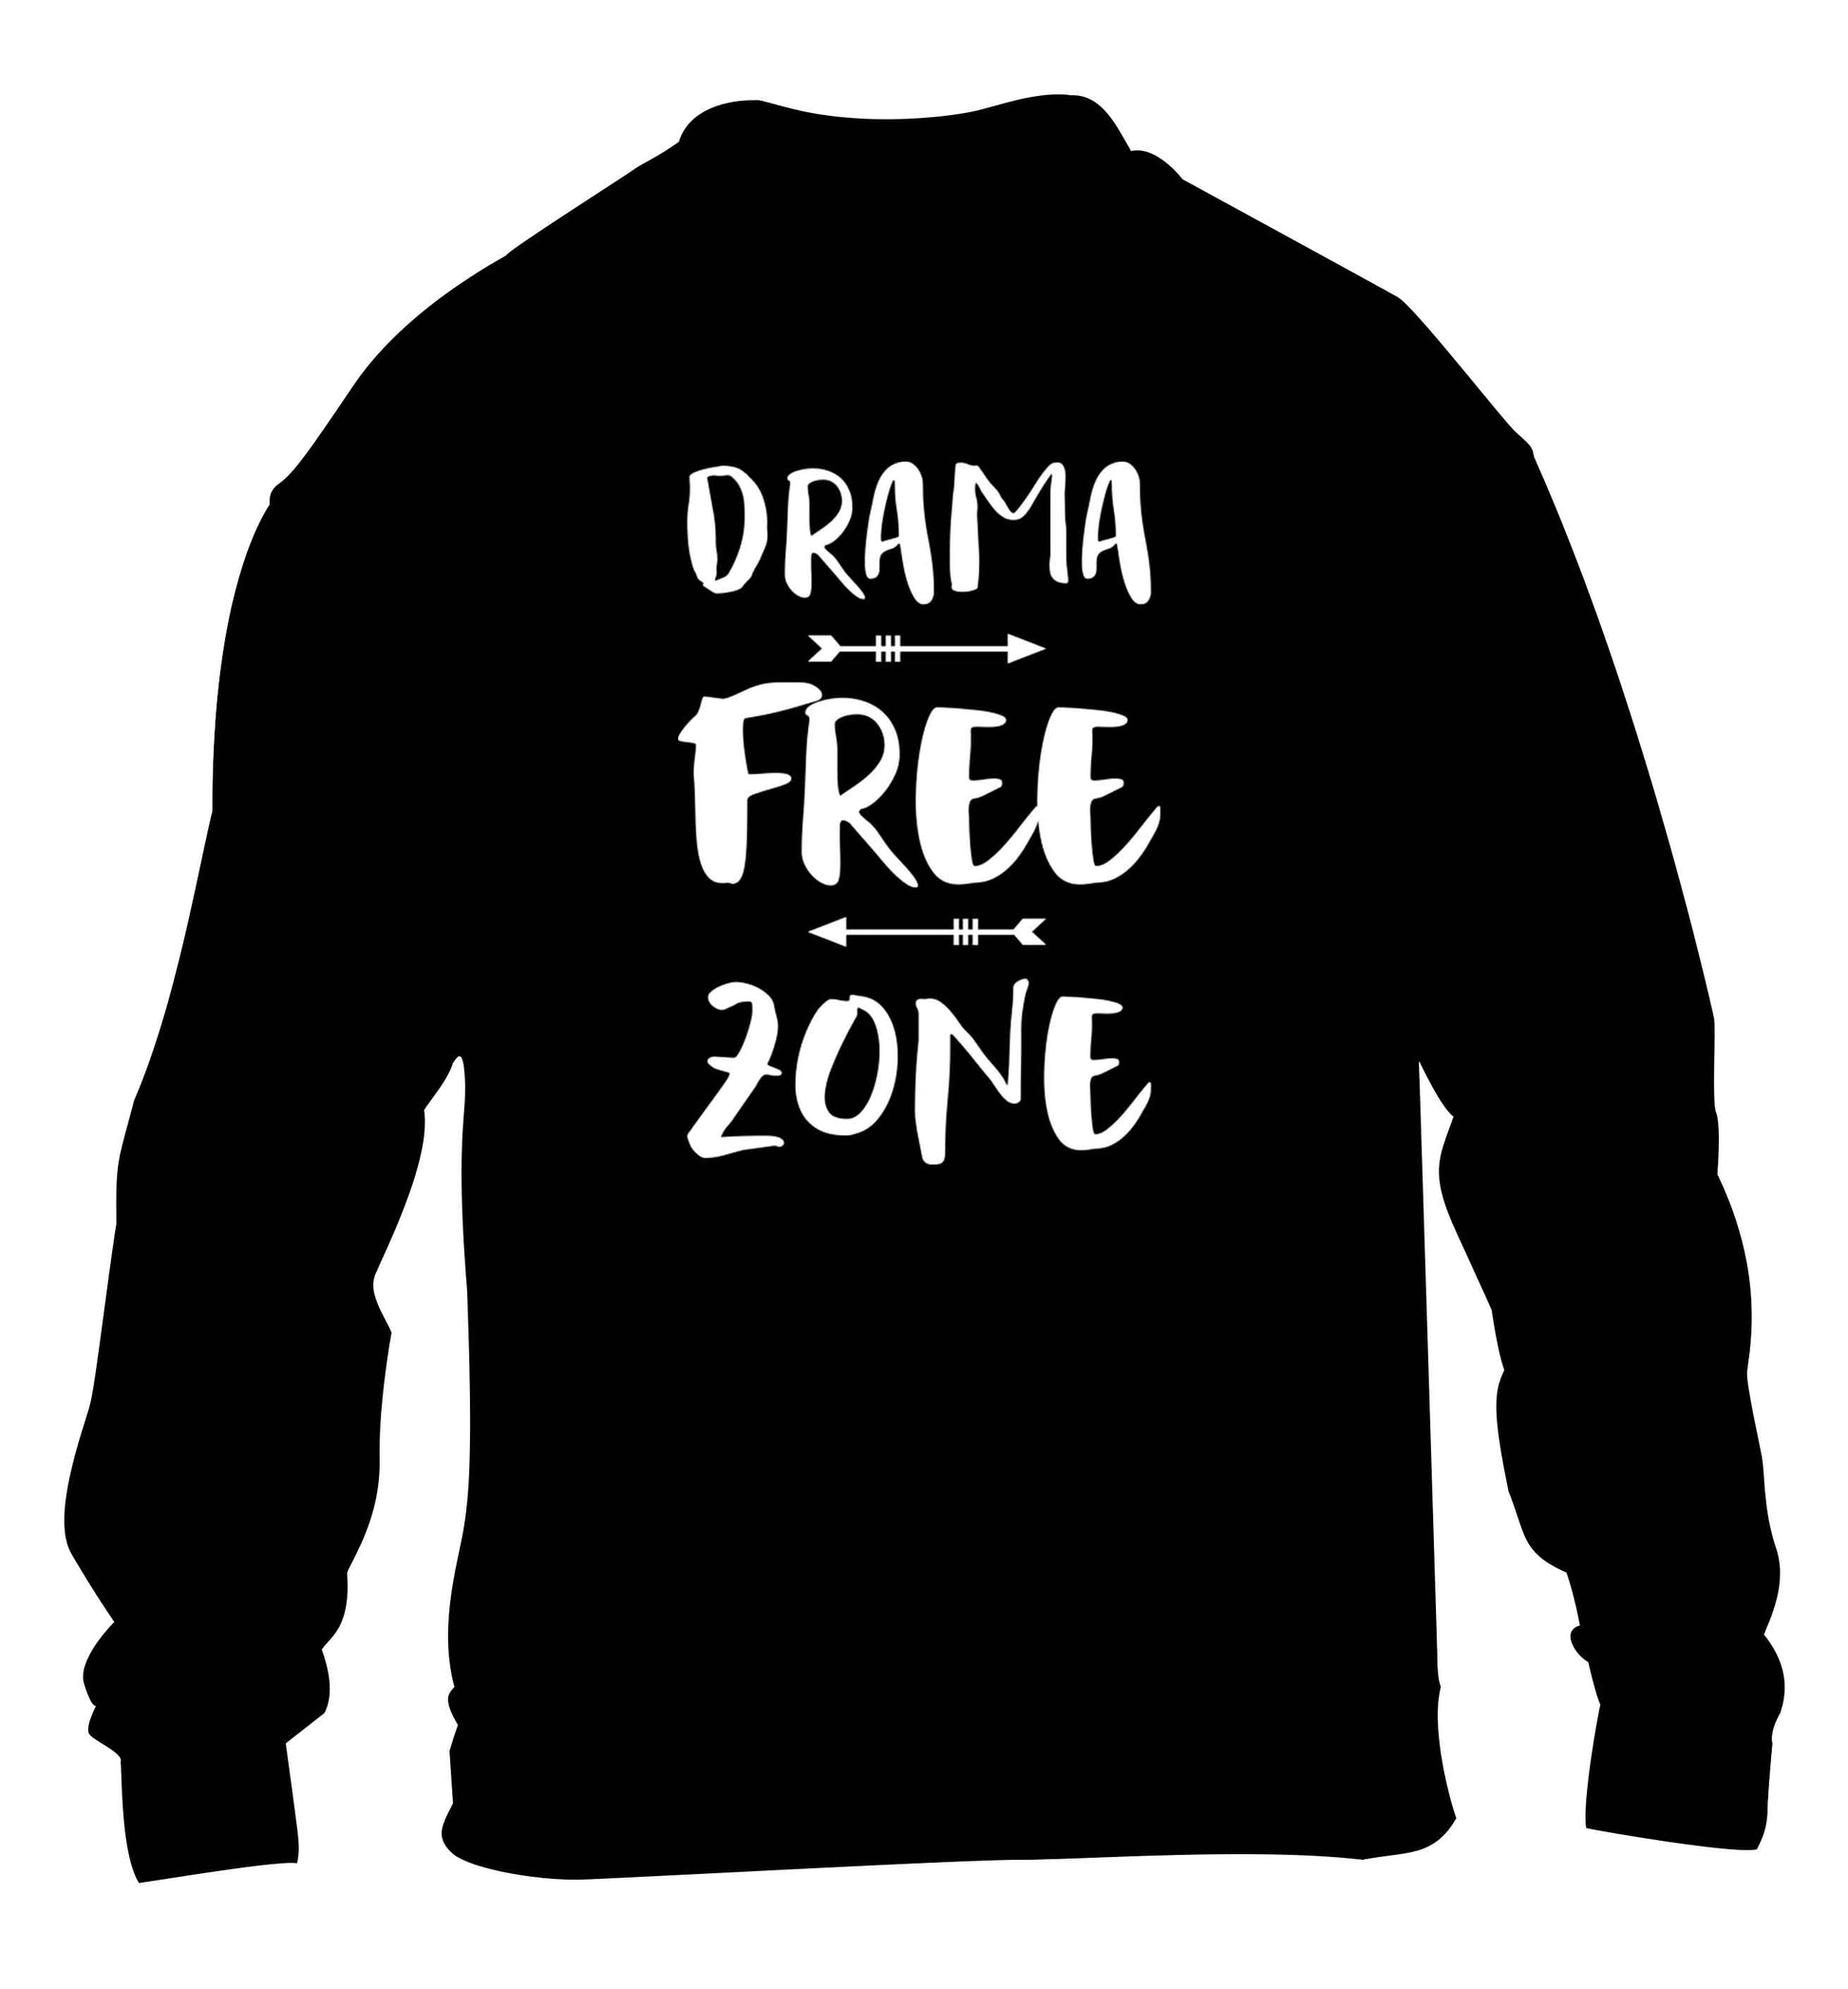 Drama free zone children's black sweater 12-13 Years